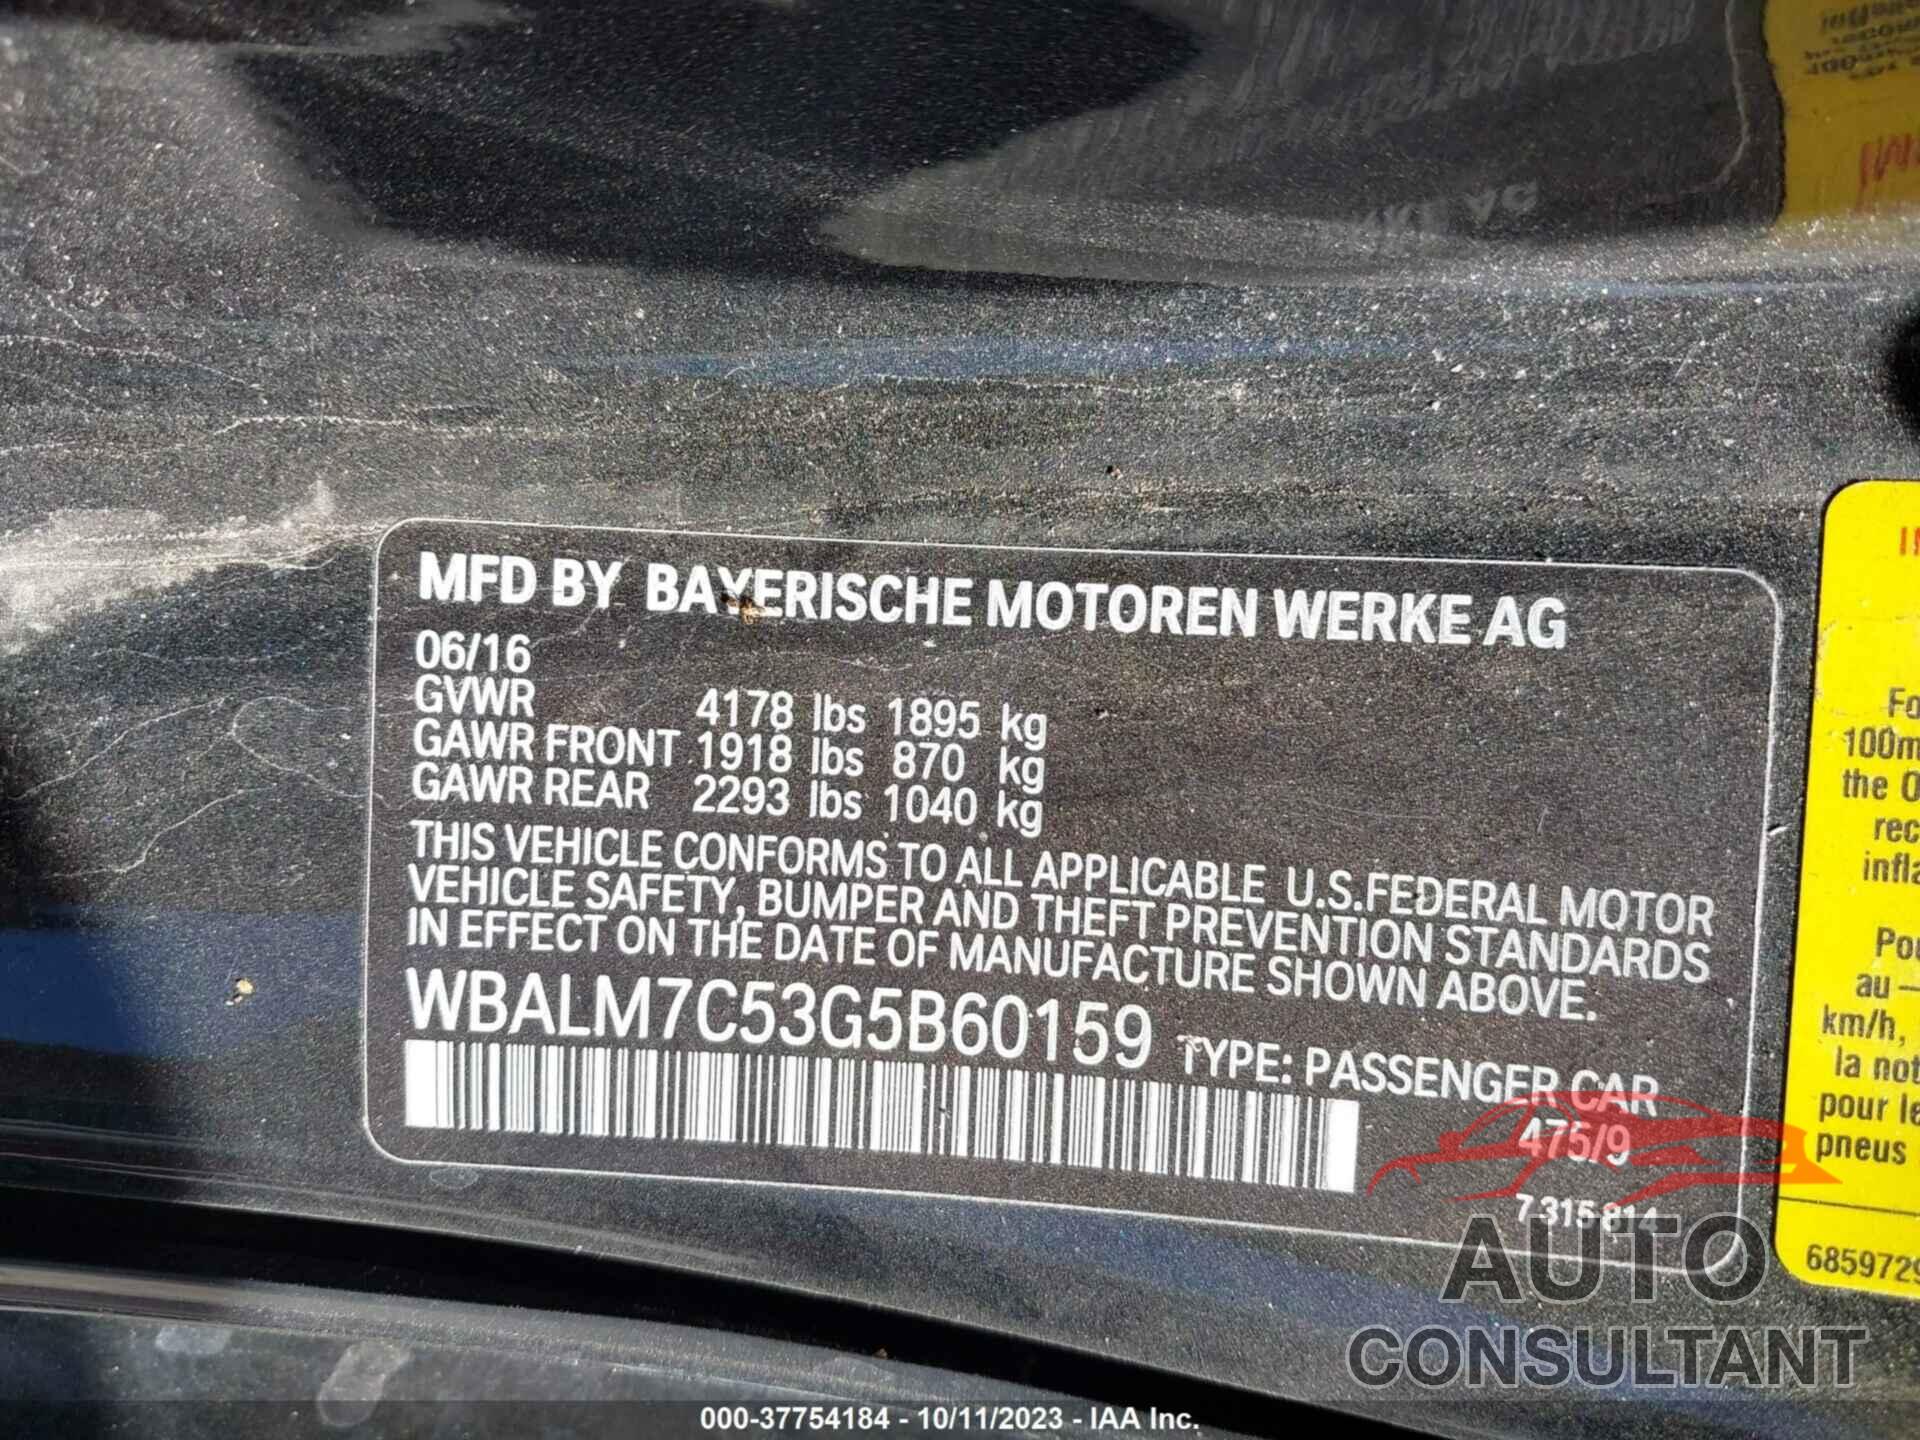 BMW Z4 2016 - WBALM7C53G5B60159